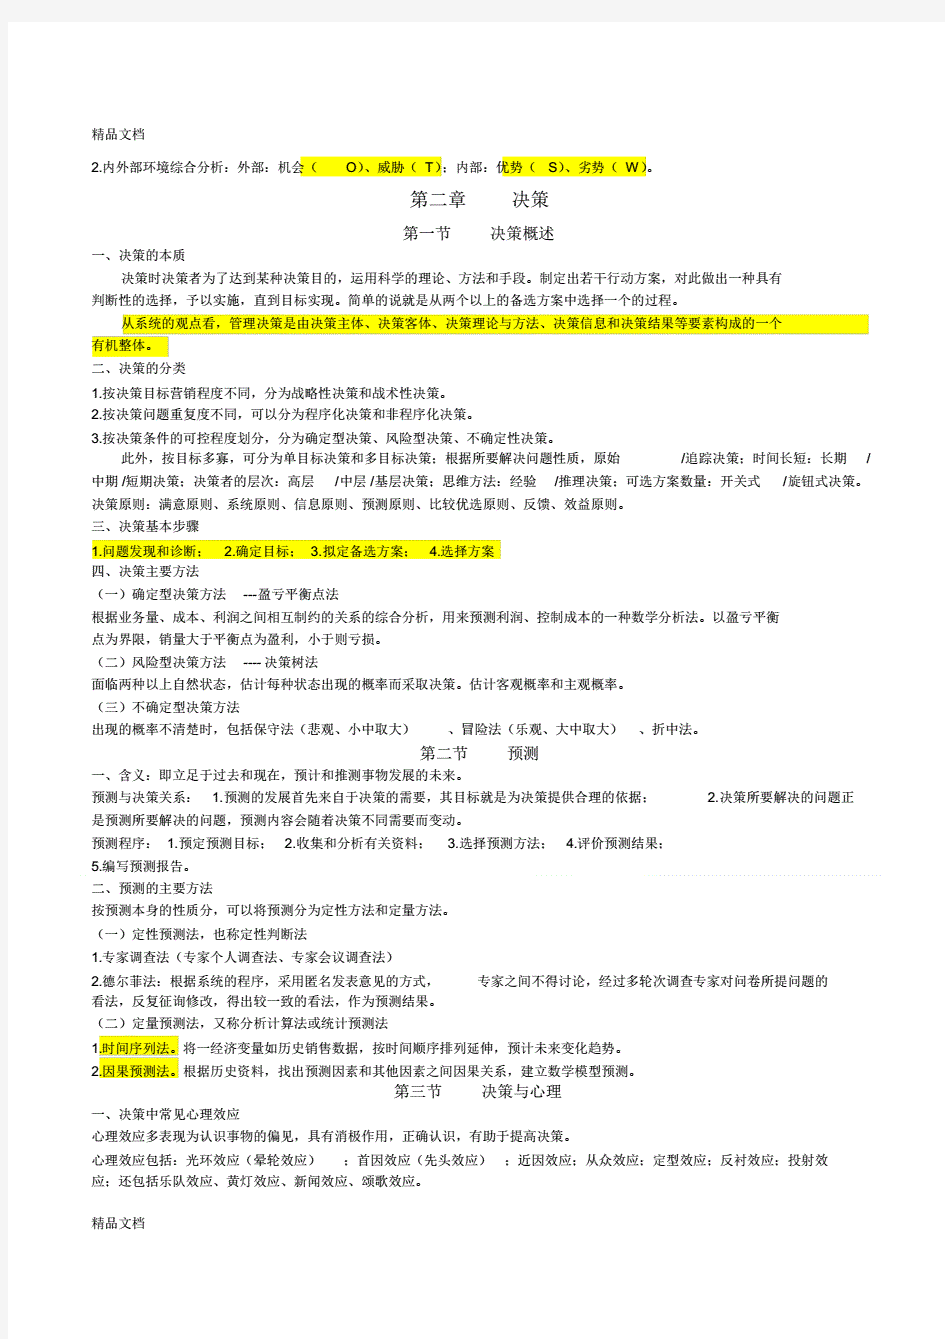 重庆市事业单位管理基础知识(全)(汇编)